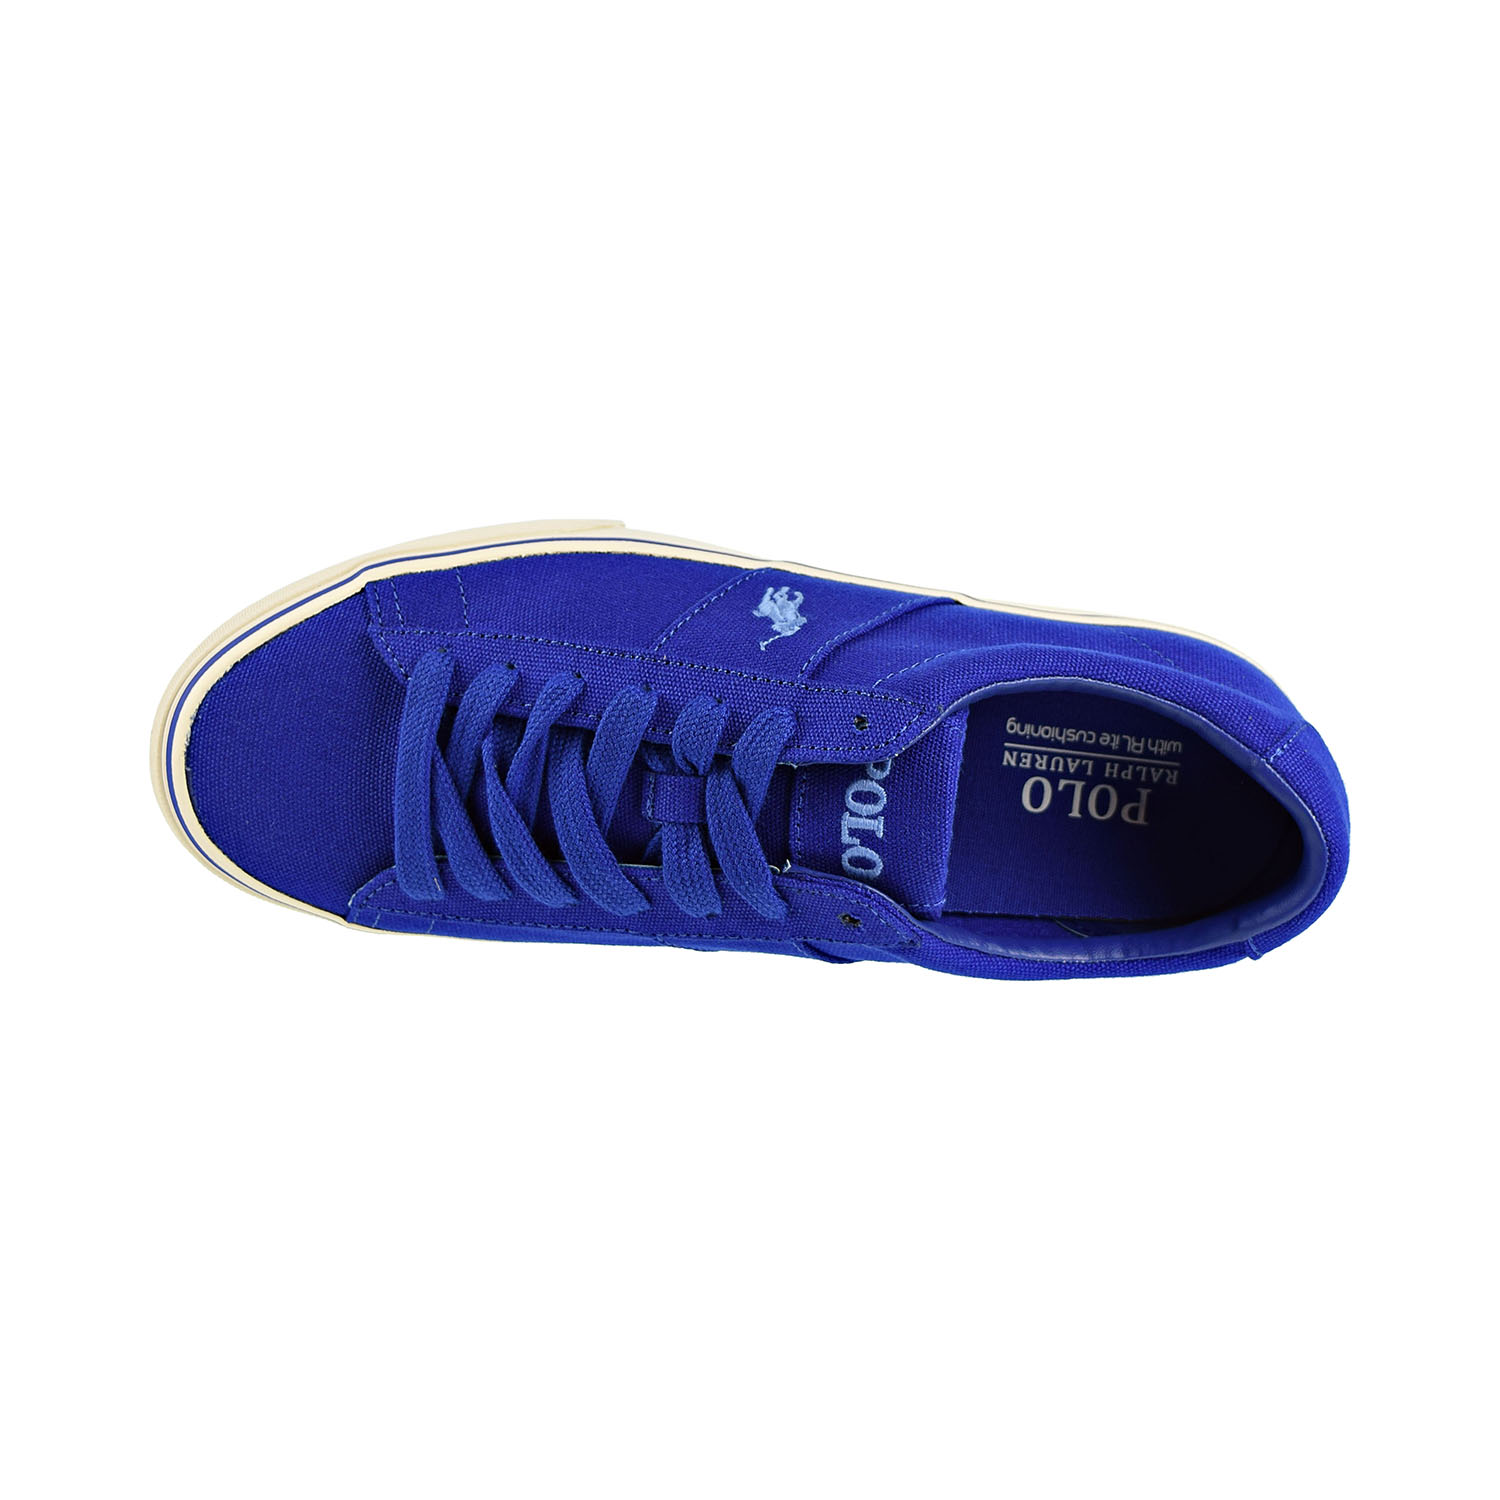 Polo Ralph Lauren Sayer Men's Shoes Blue 816710017-003 - image 5 of 6